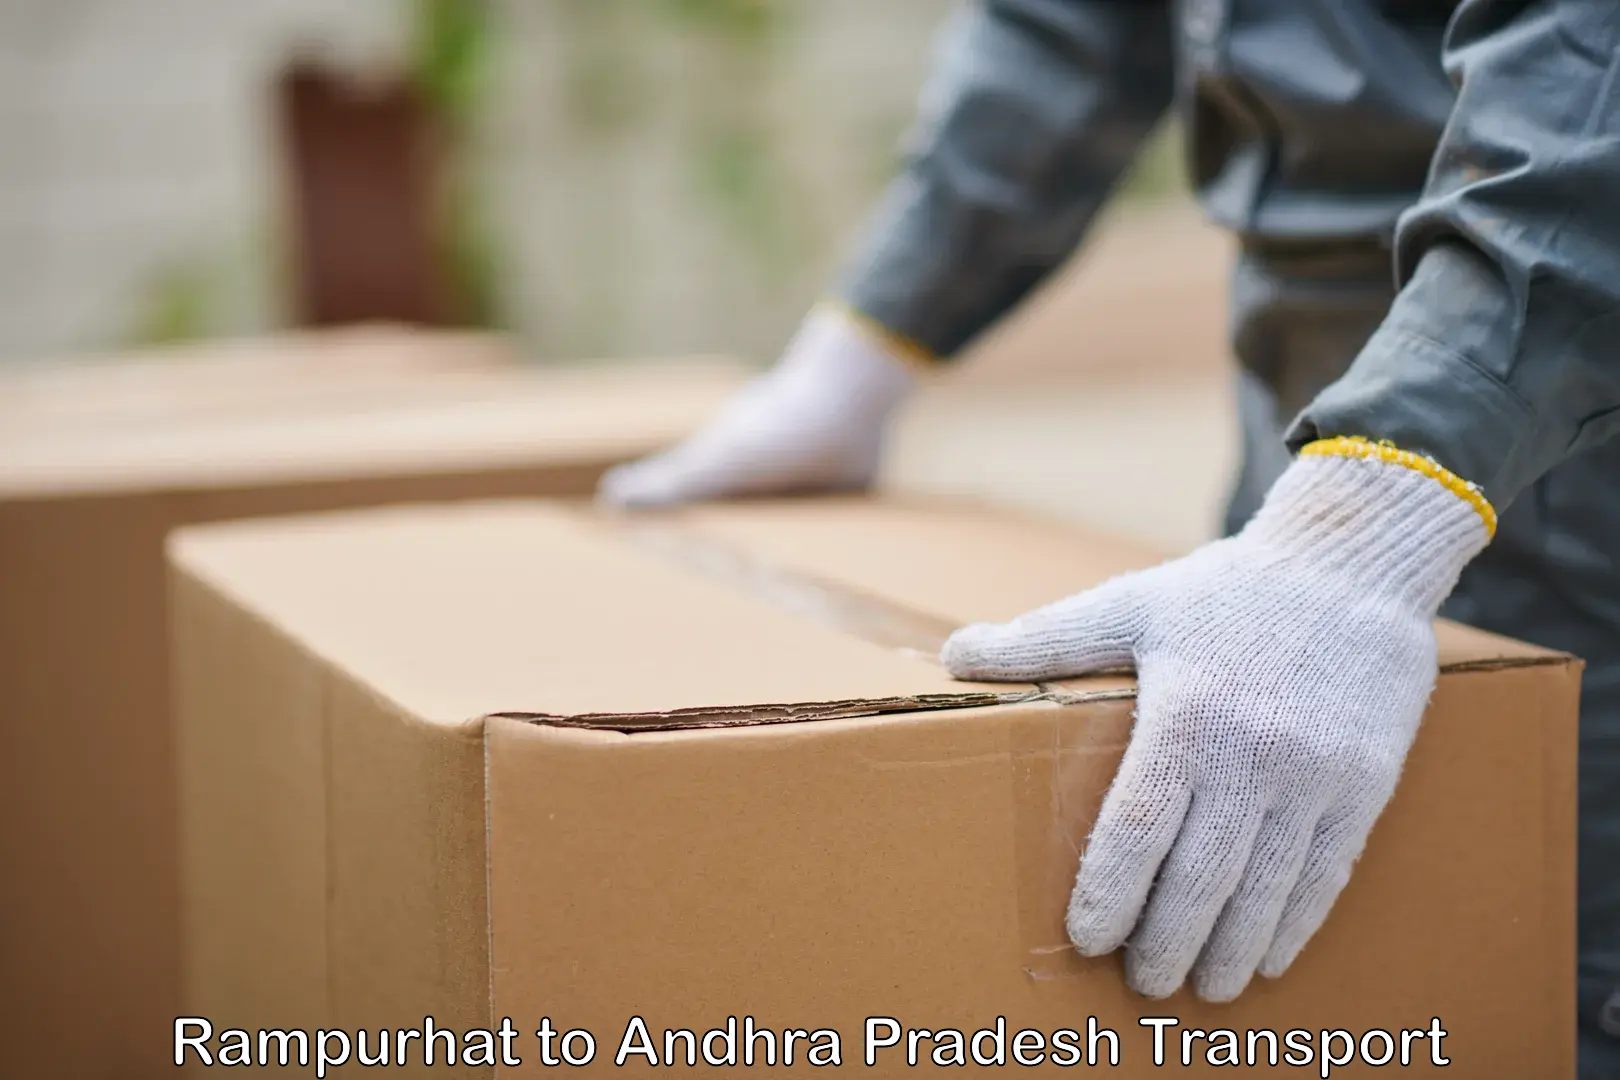 Cargo transport services Rampurhat to Bikkavolu